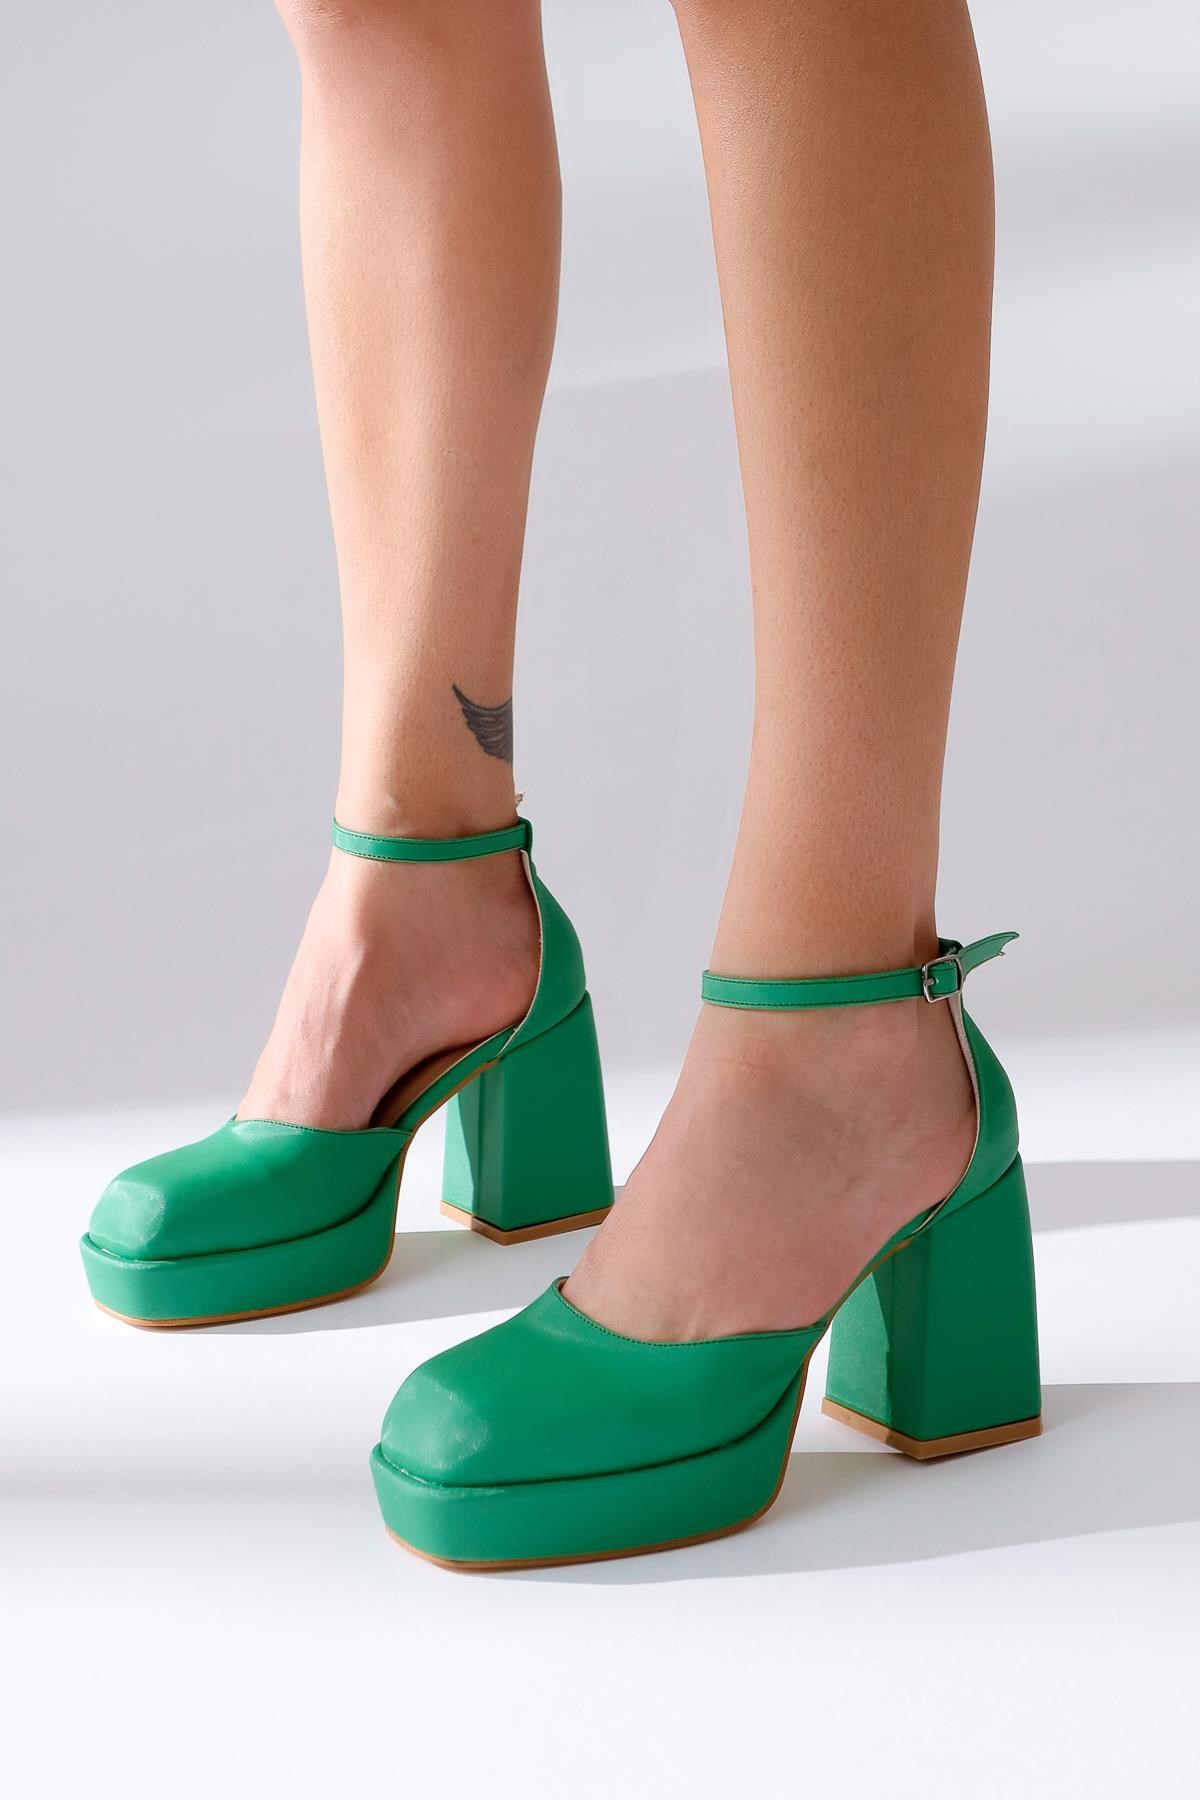 Persa Yeşil Saten Platformlu Kalın Ökçeli Yüksek Topuklu Ayakkabı |  Limoya.com ile Modayı Keşfet!